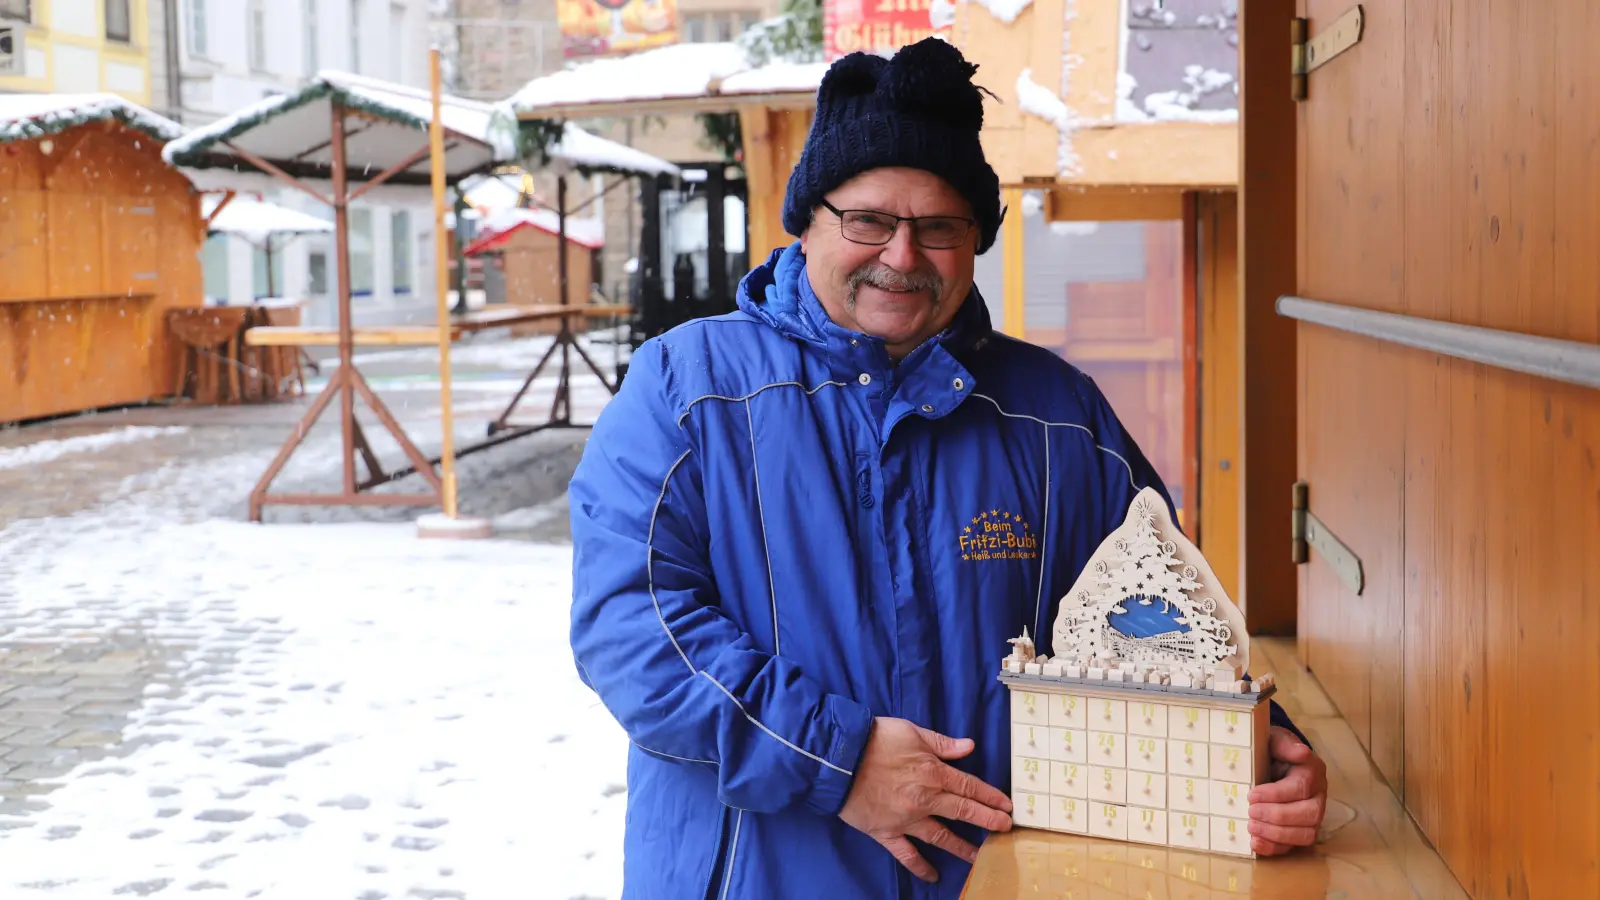 Fritz Heubeck, genannt „Fritzi-Bubi”, bringt zum Ansbacher Weihnachtsmarkt immer eine Bastelarbeit mit. Diesmal ist es ein Adventskalender. (Foto: Oliver Herbst)